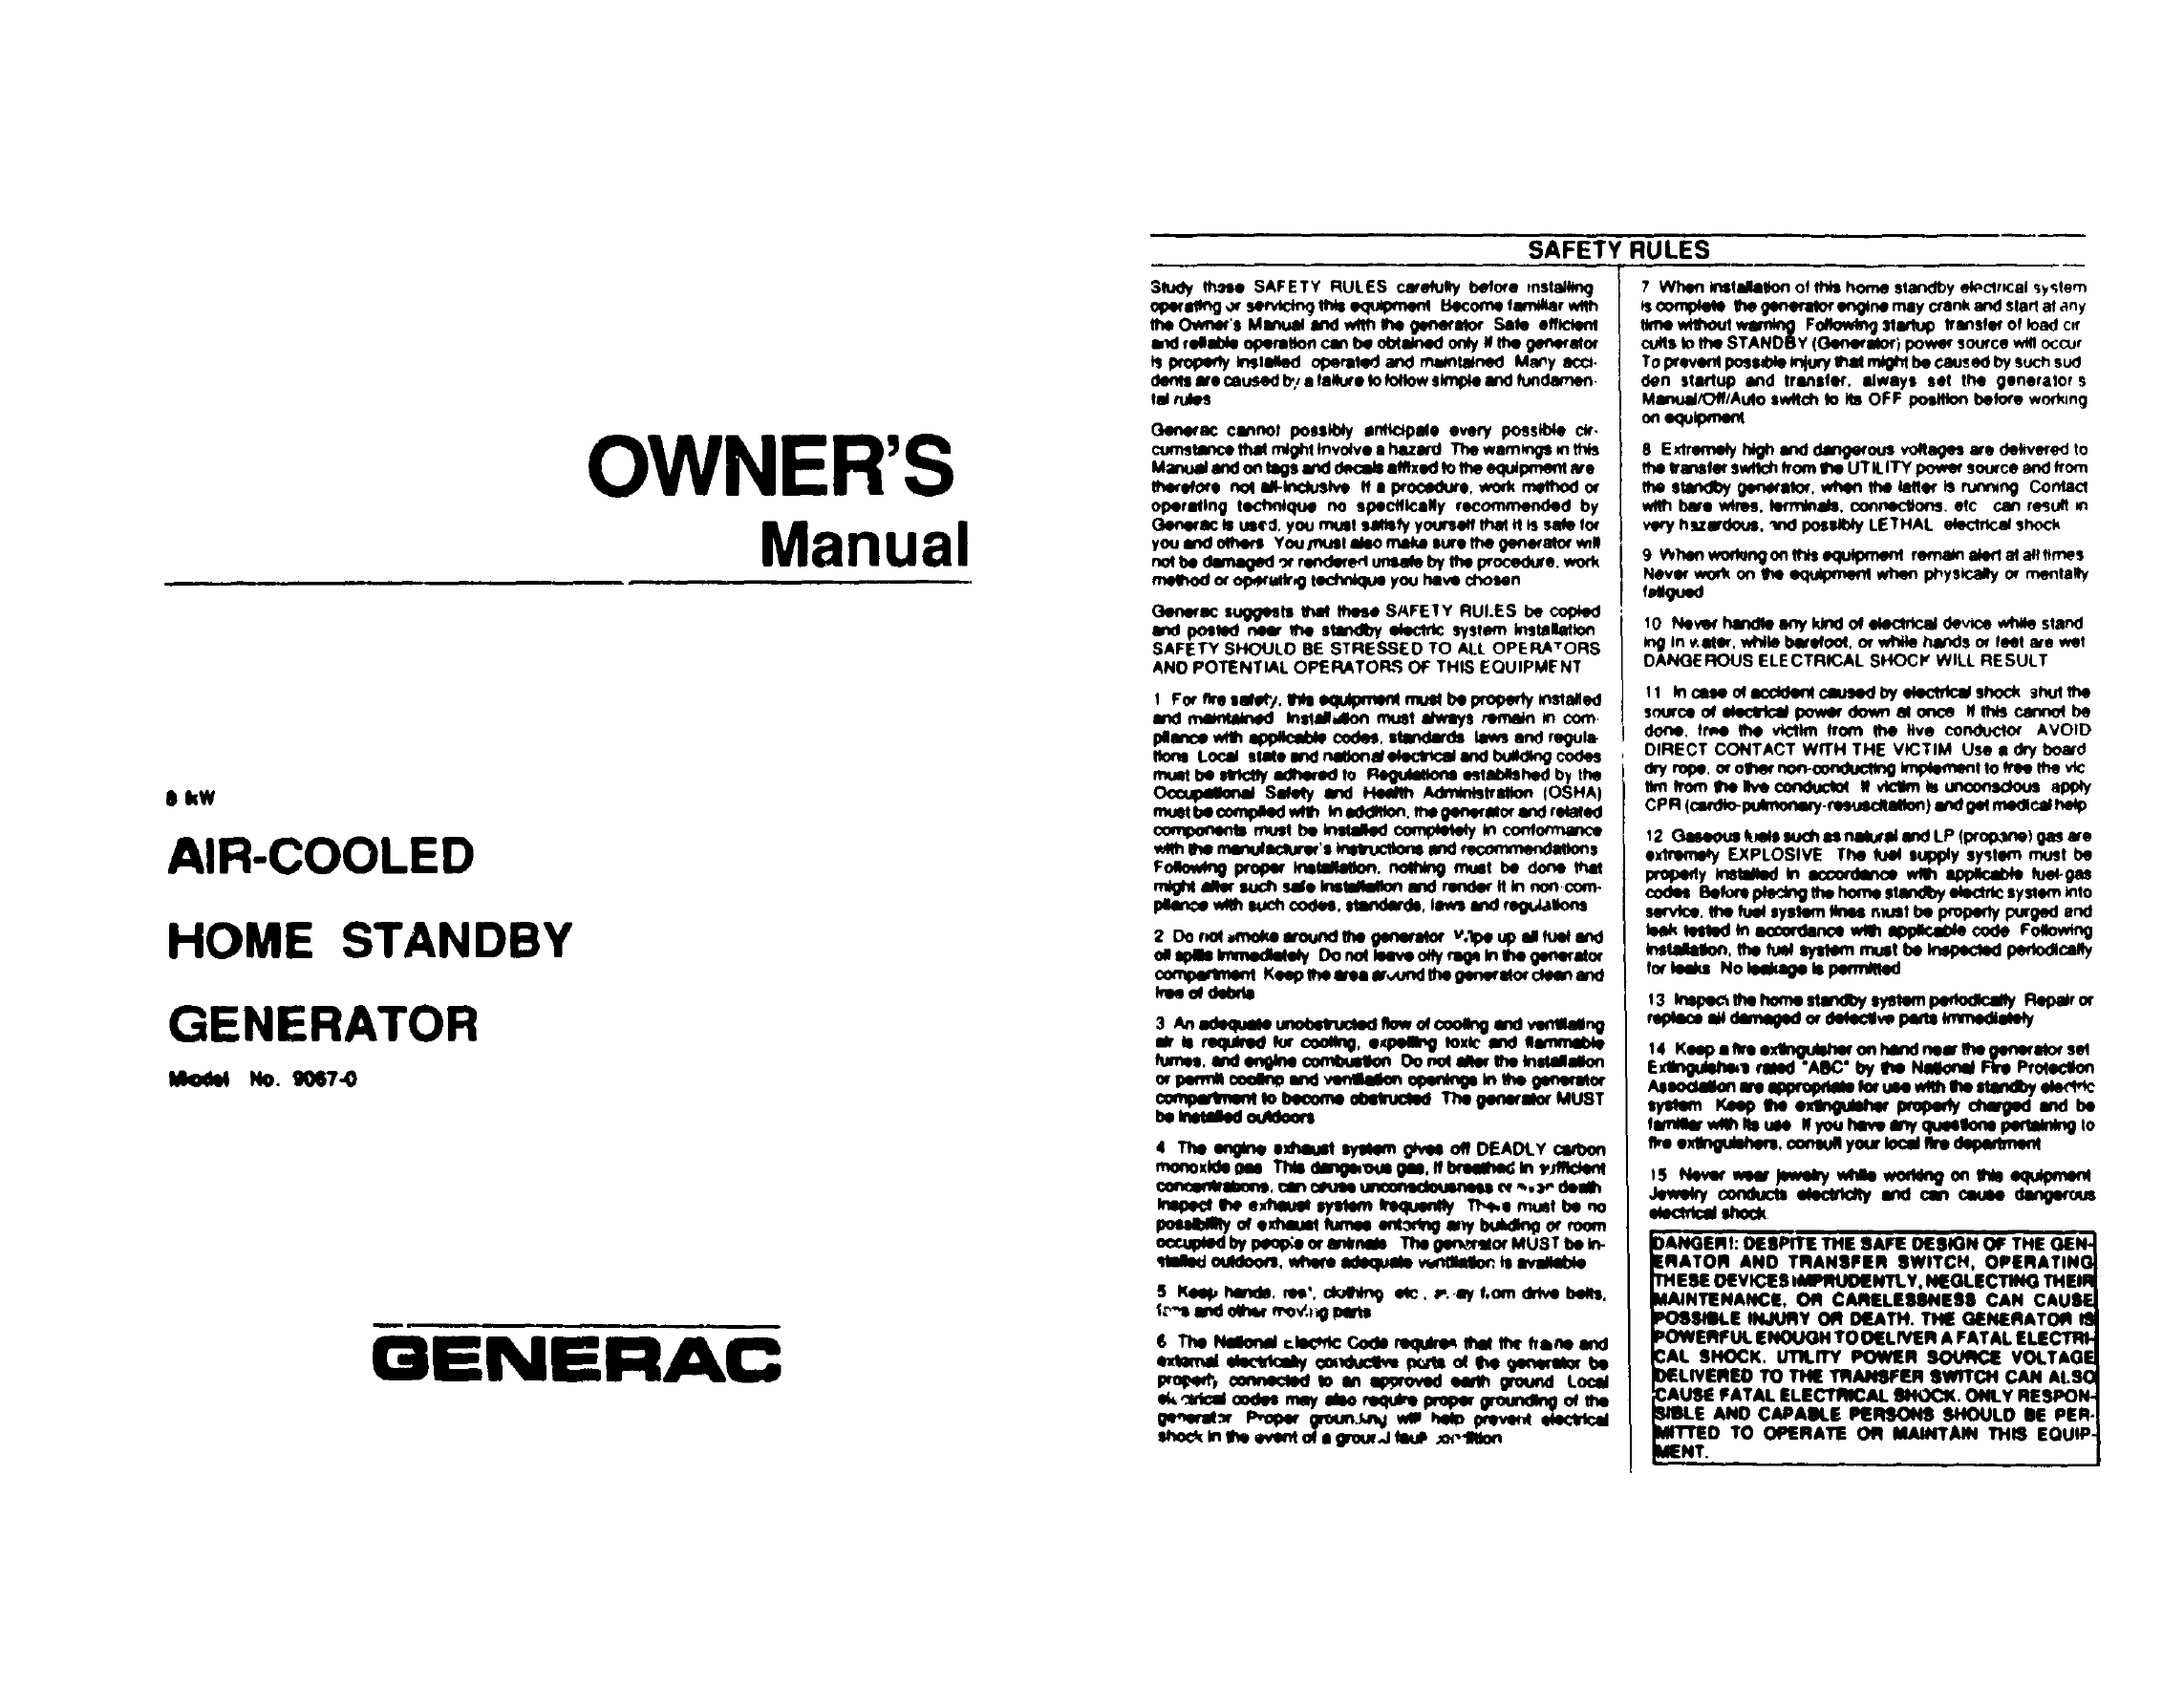 generac generator manual